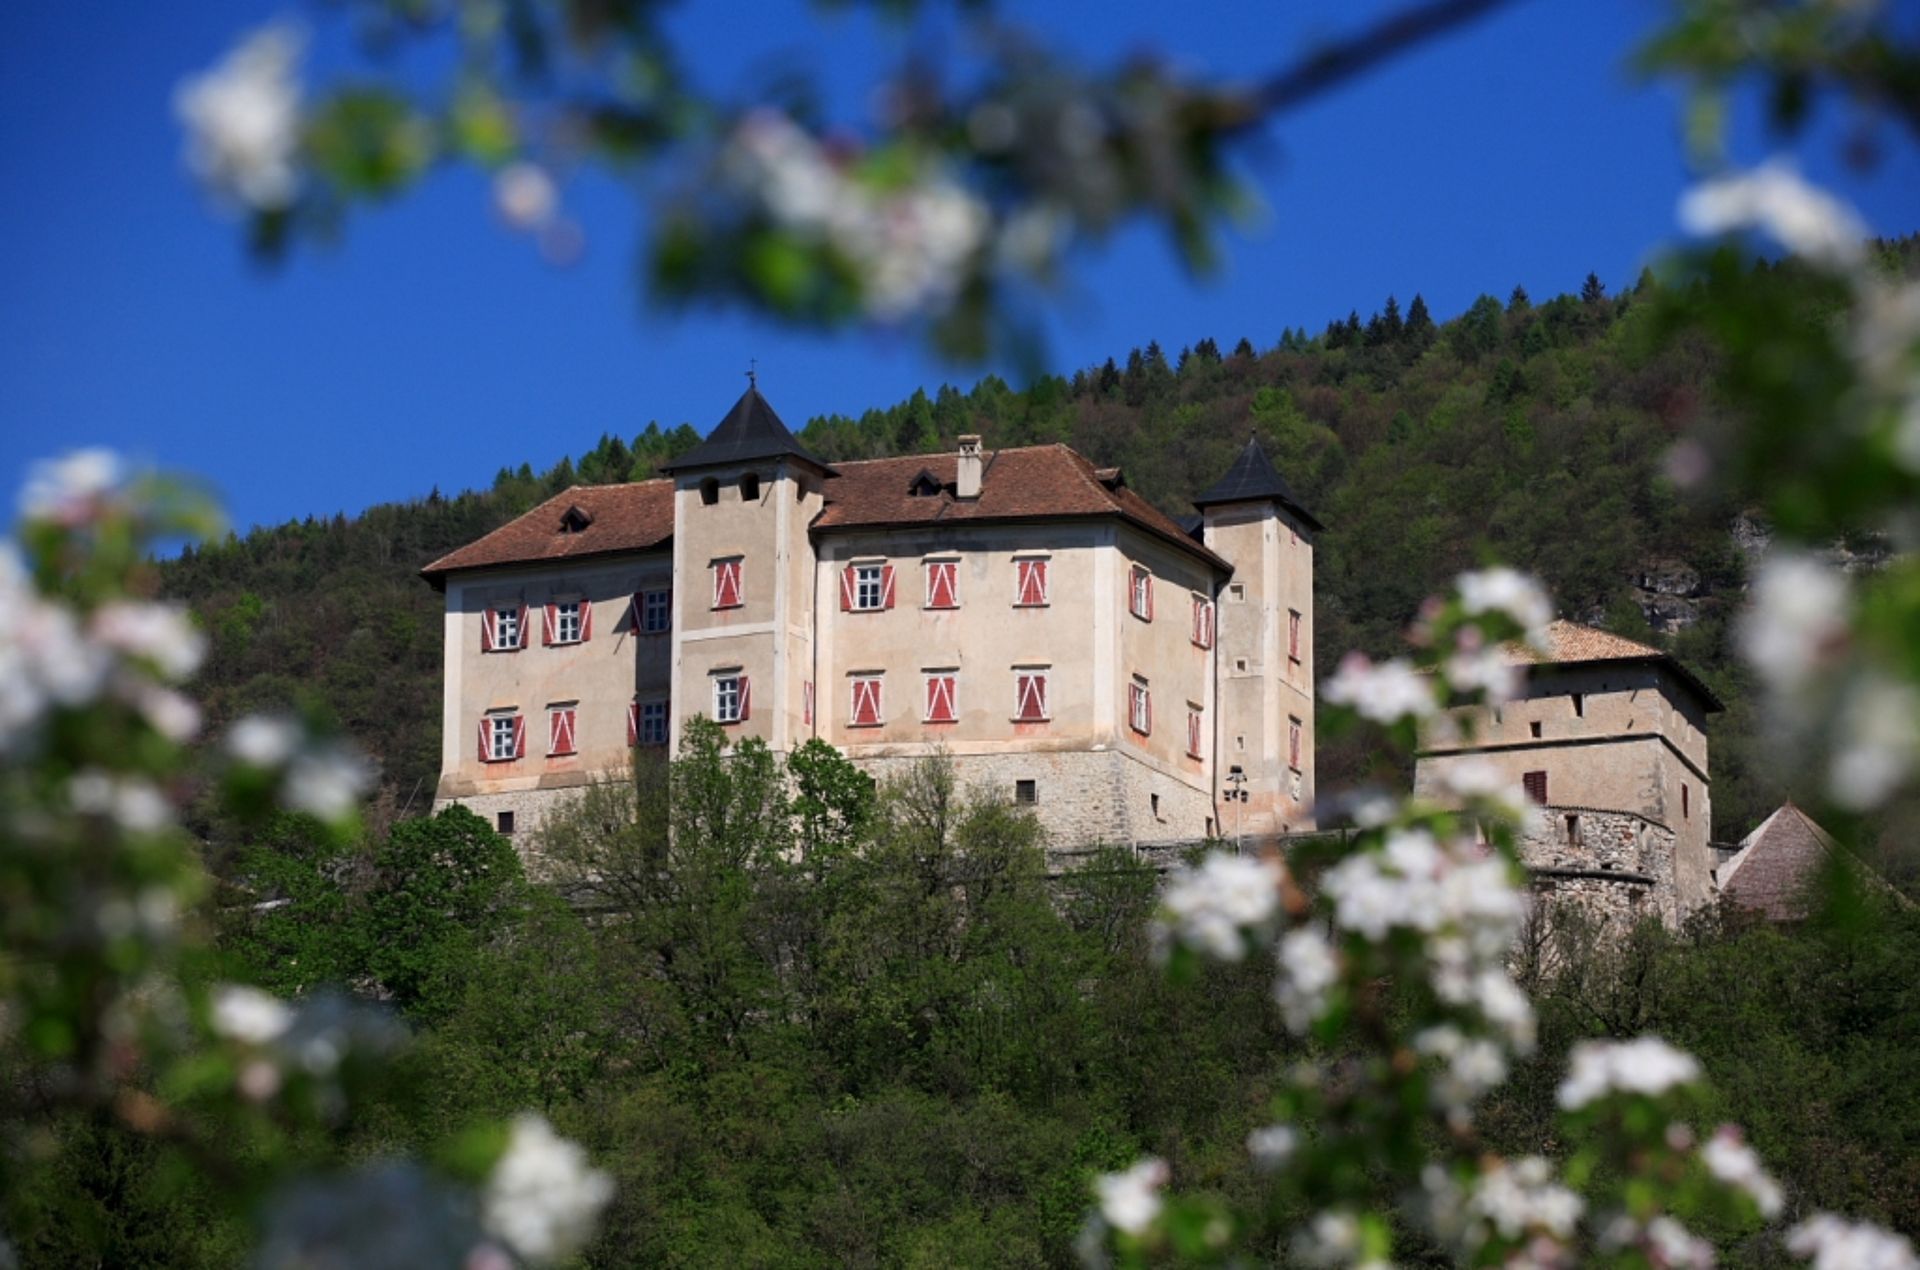 Castel Thun durante la fioritura dei meleti